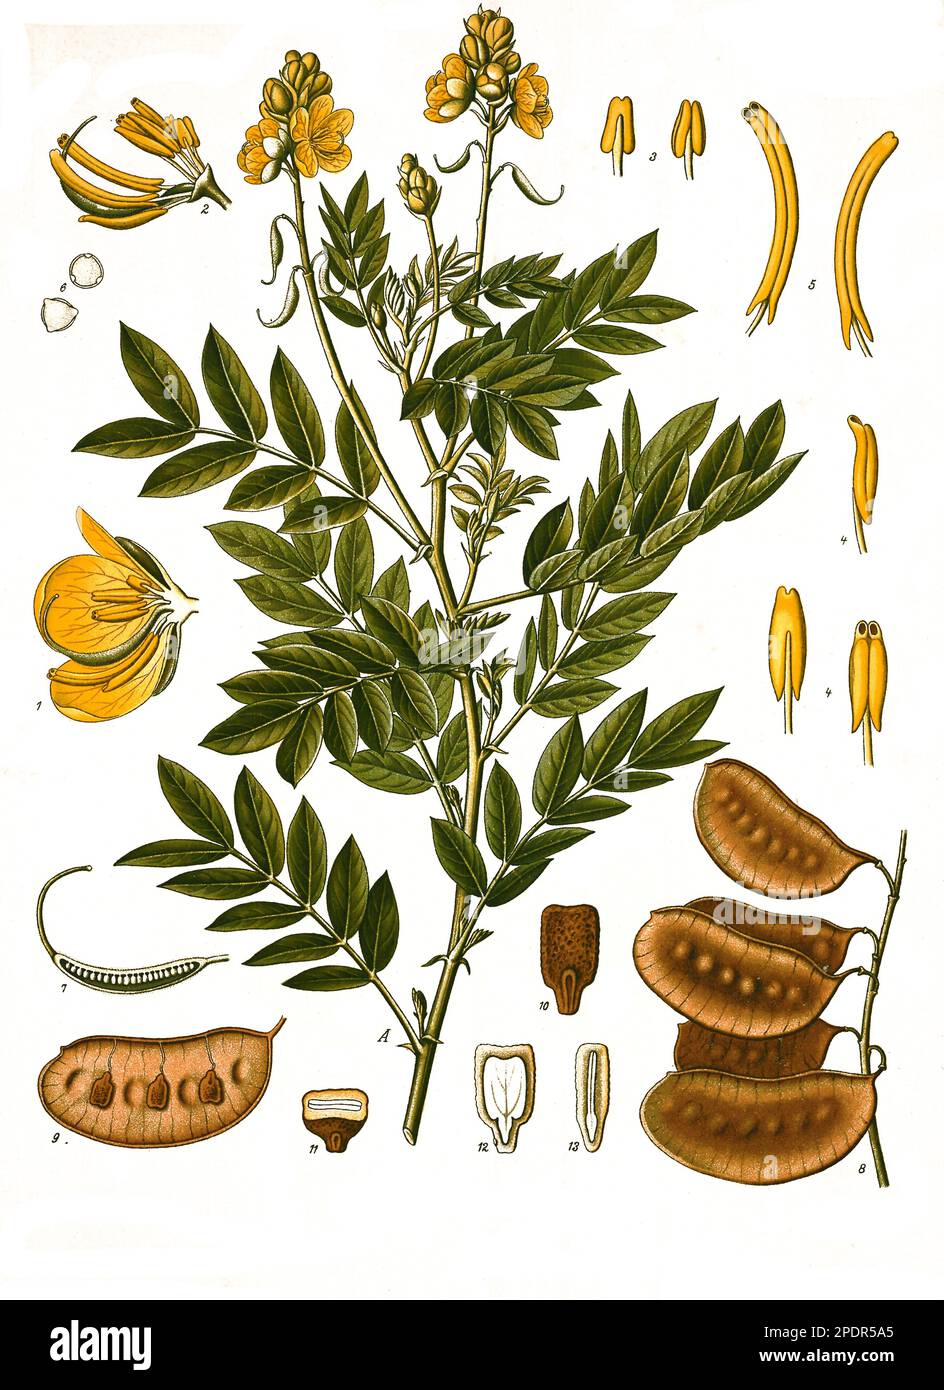 Heilpflanze, Alexandrinische Senna (Senna alexandrina, Cassia senna) ist eine Pflanzenart aus der Gattung Senna in der Unterfamilie der Johannisbrotgewächse, Historisch, digital restaurierte Reproduktion von einer Vorlage aus dem 19. Jahrhundert, Stock Photo